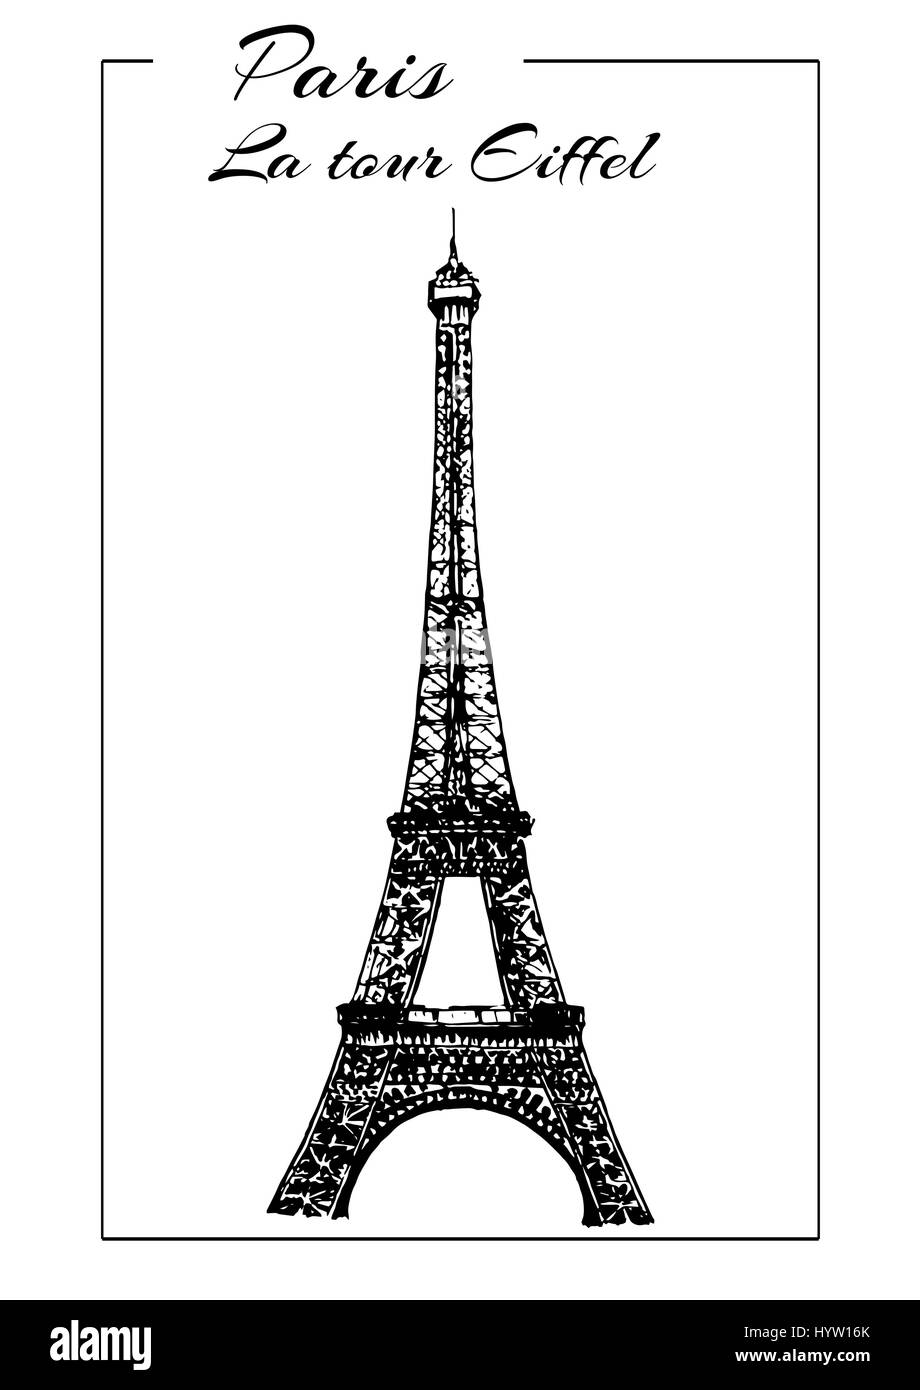 La tour Eiffel l'illustration vectorielle. Symbole de Paris. Sites touristiques français. Lieu touristique. Illustration croquis dessinés à la main. Peut être utilisé à la publicité, postc Illustration de Vecteur